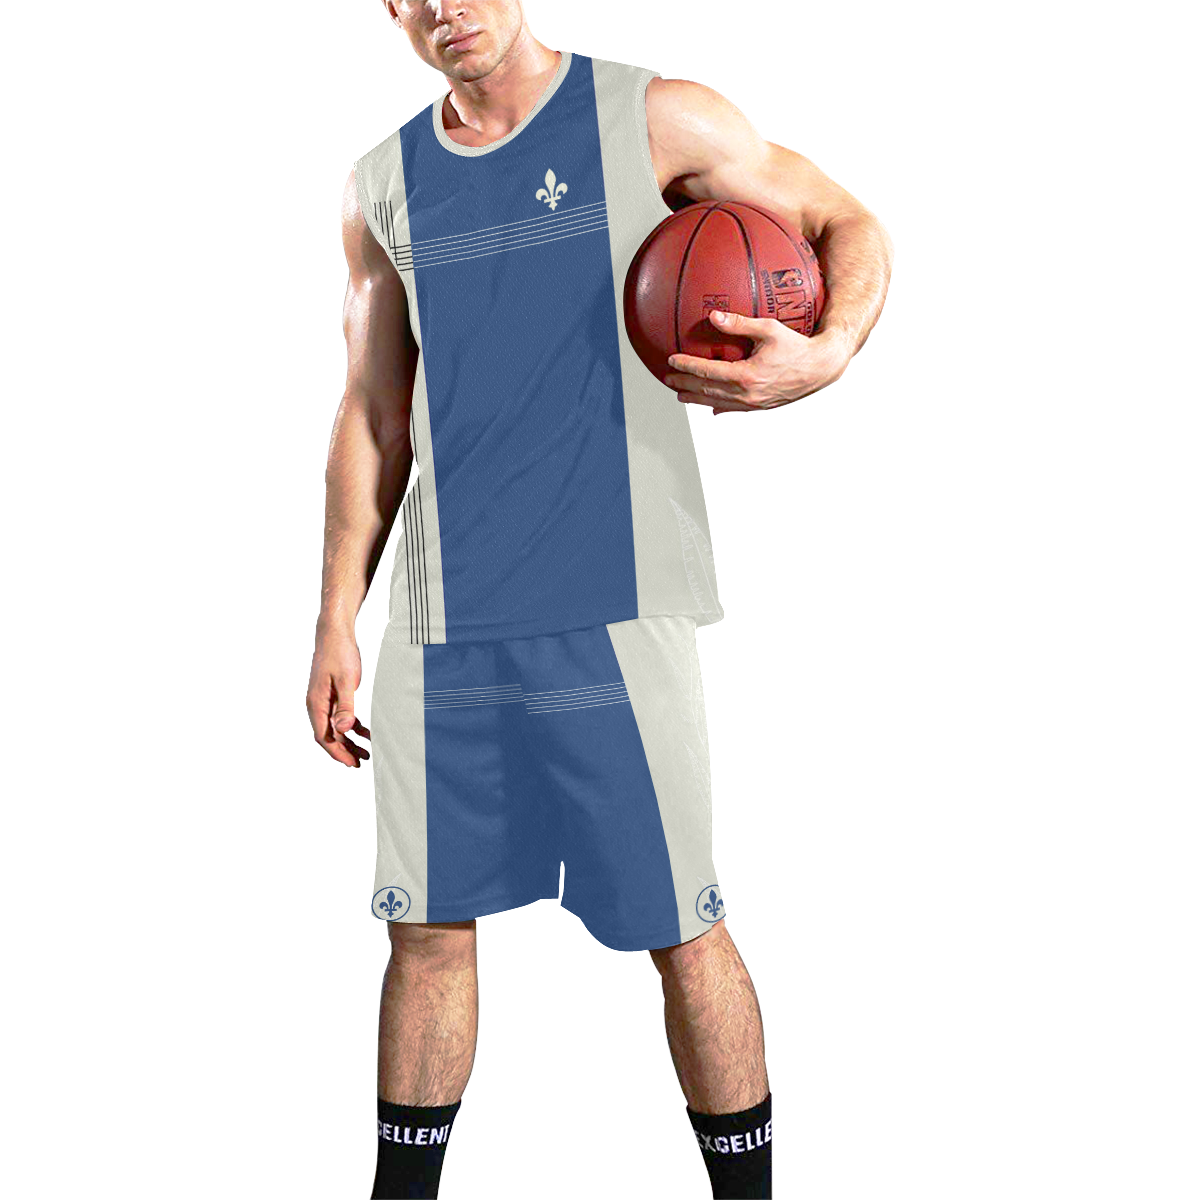 QUEBEC SPORT All Over Print Basketball Uniform